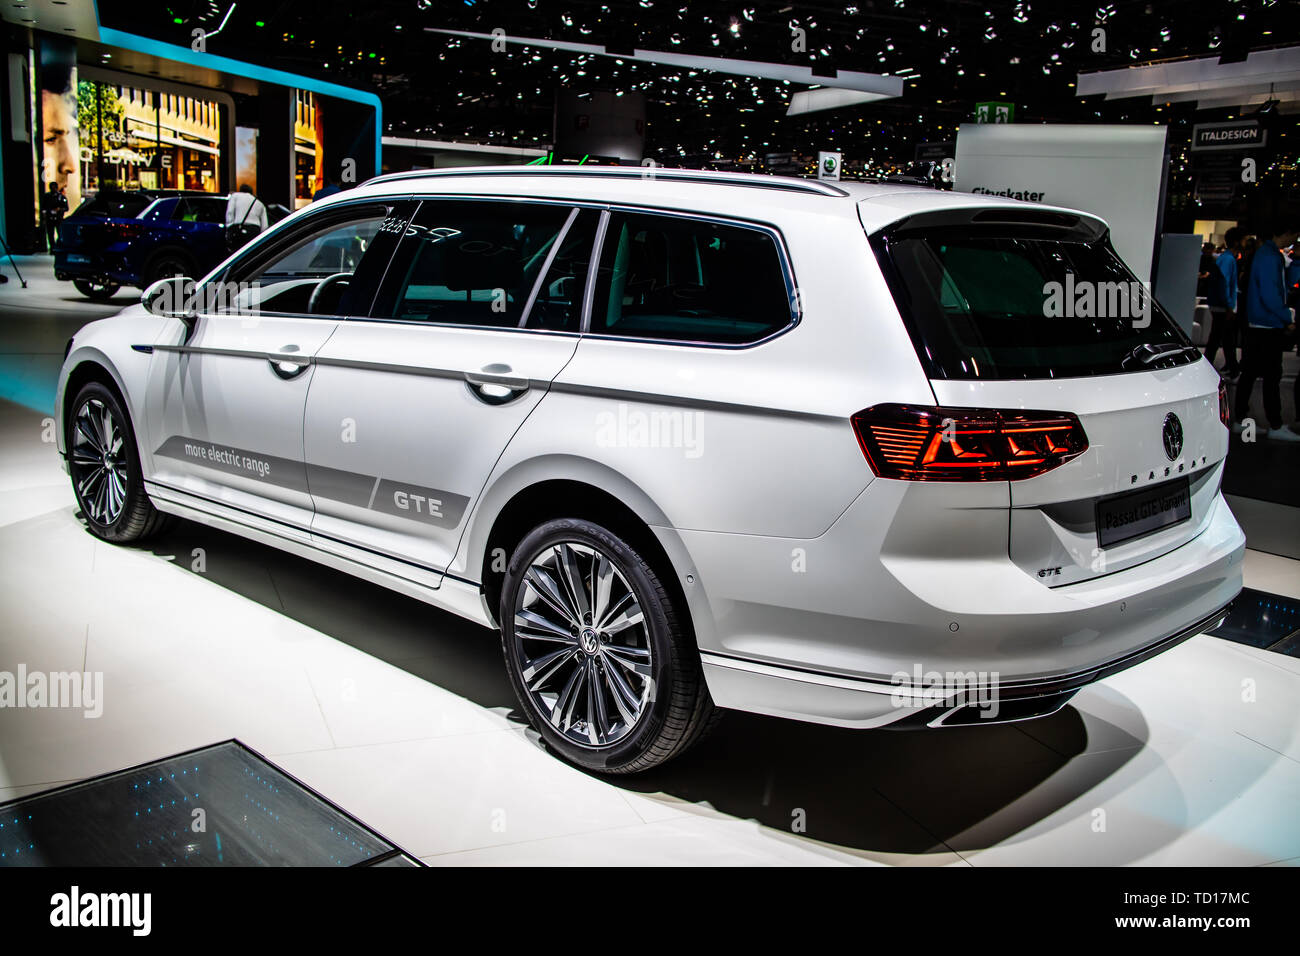 Vw Volkswagen Passat Stockfotos und -bilder Kaufen - Seite 3 - Alamy